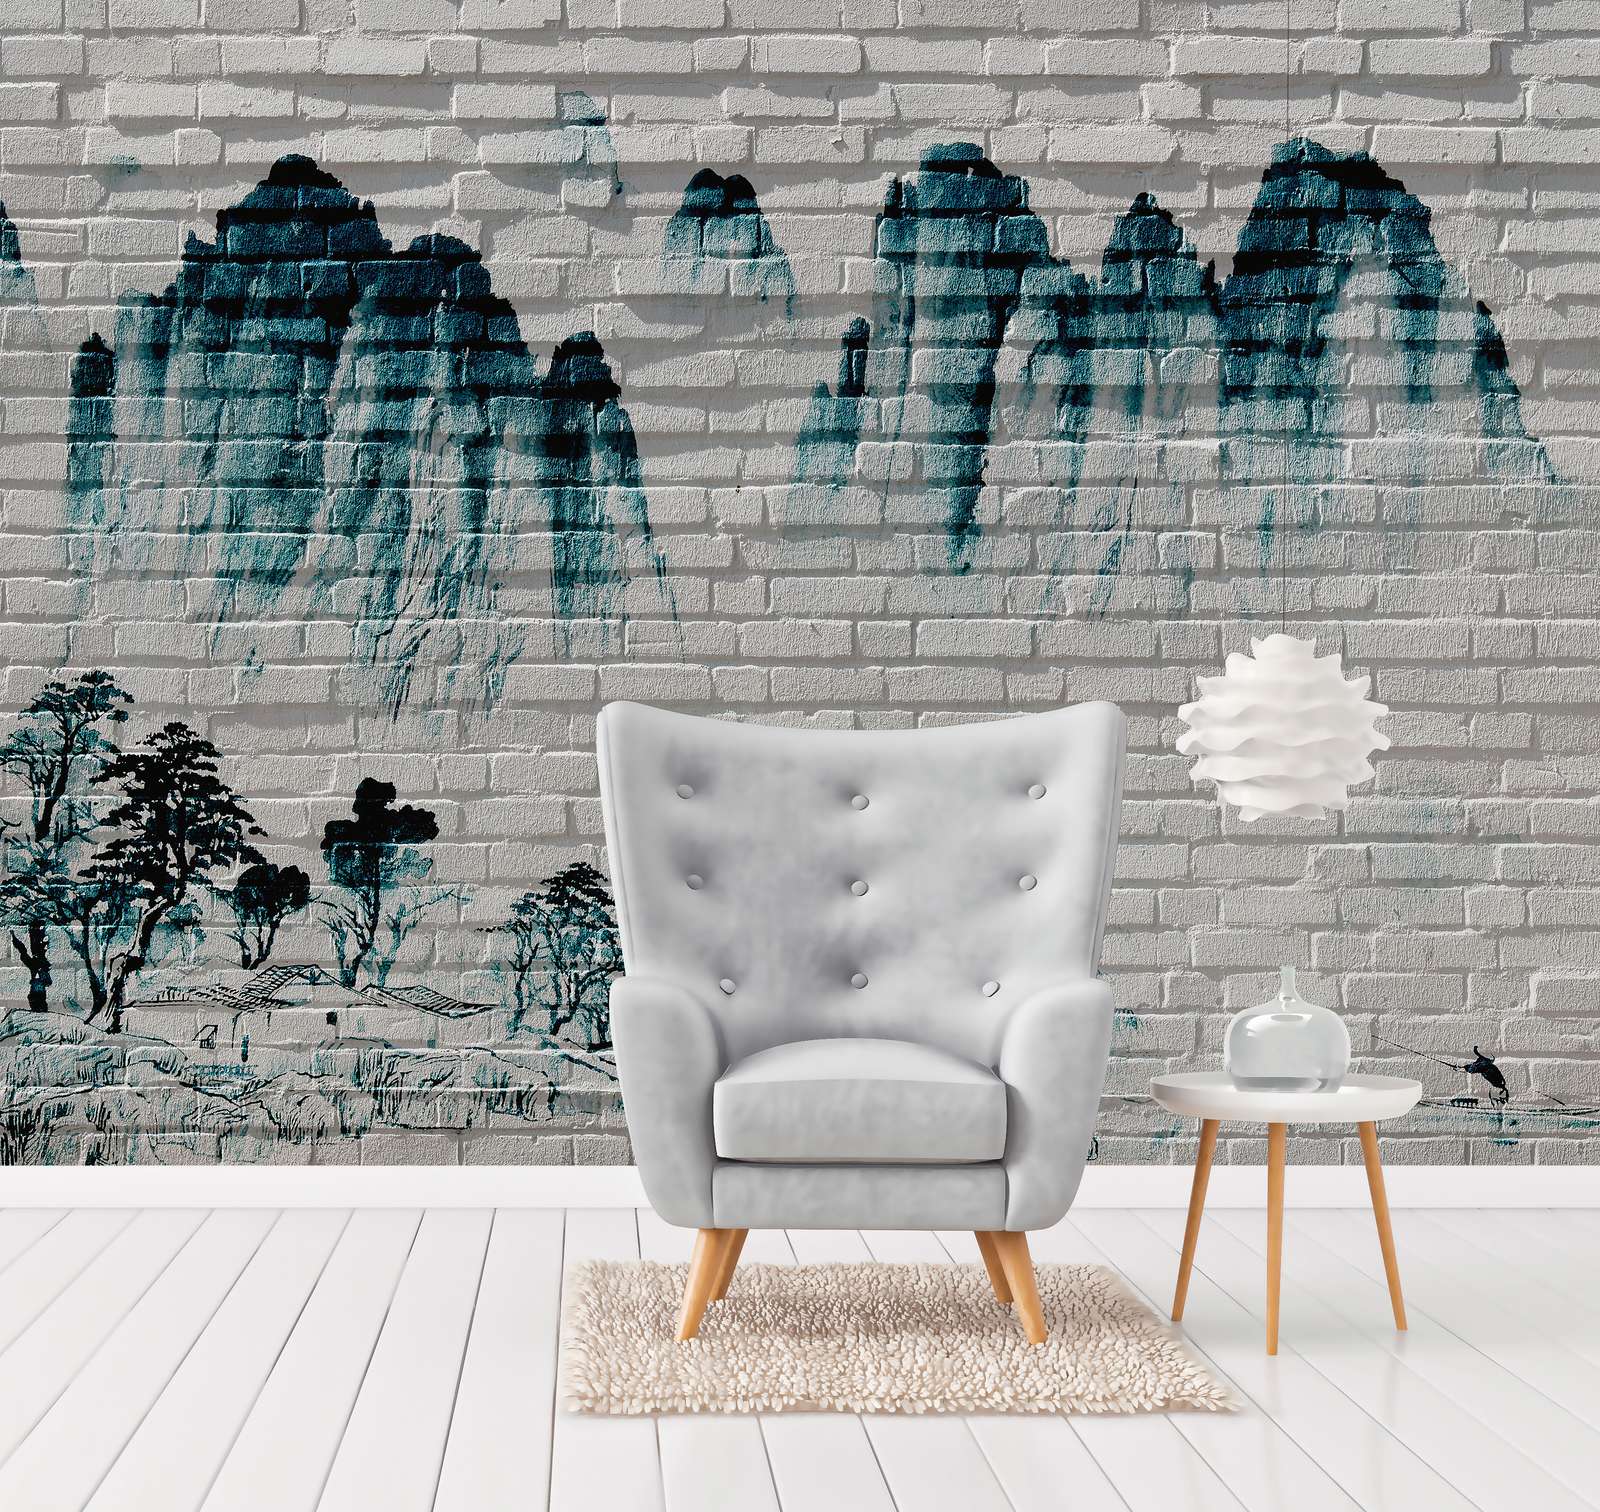             Photo wallpaper Mountains on Brick Wall - Blue, White
        